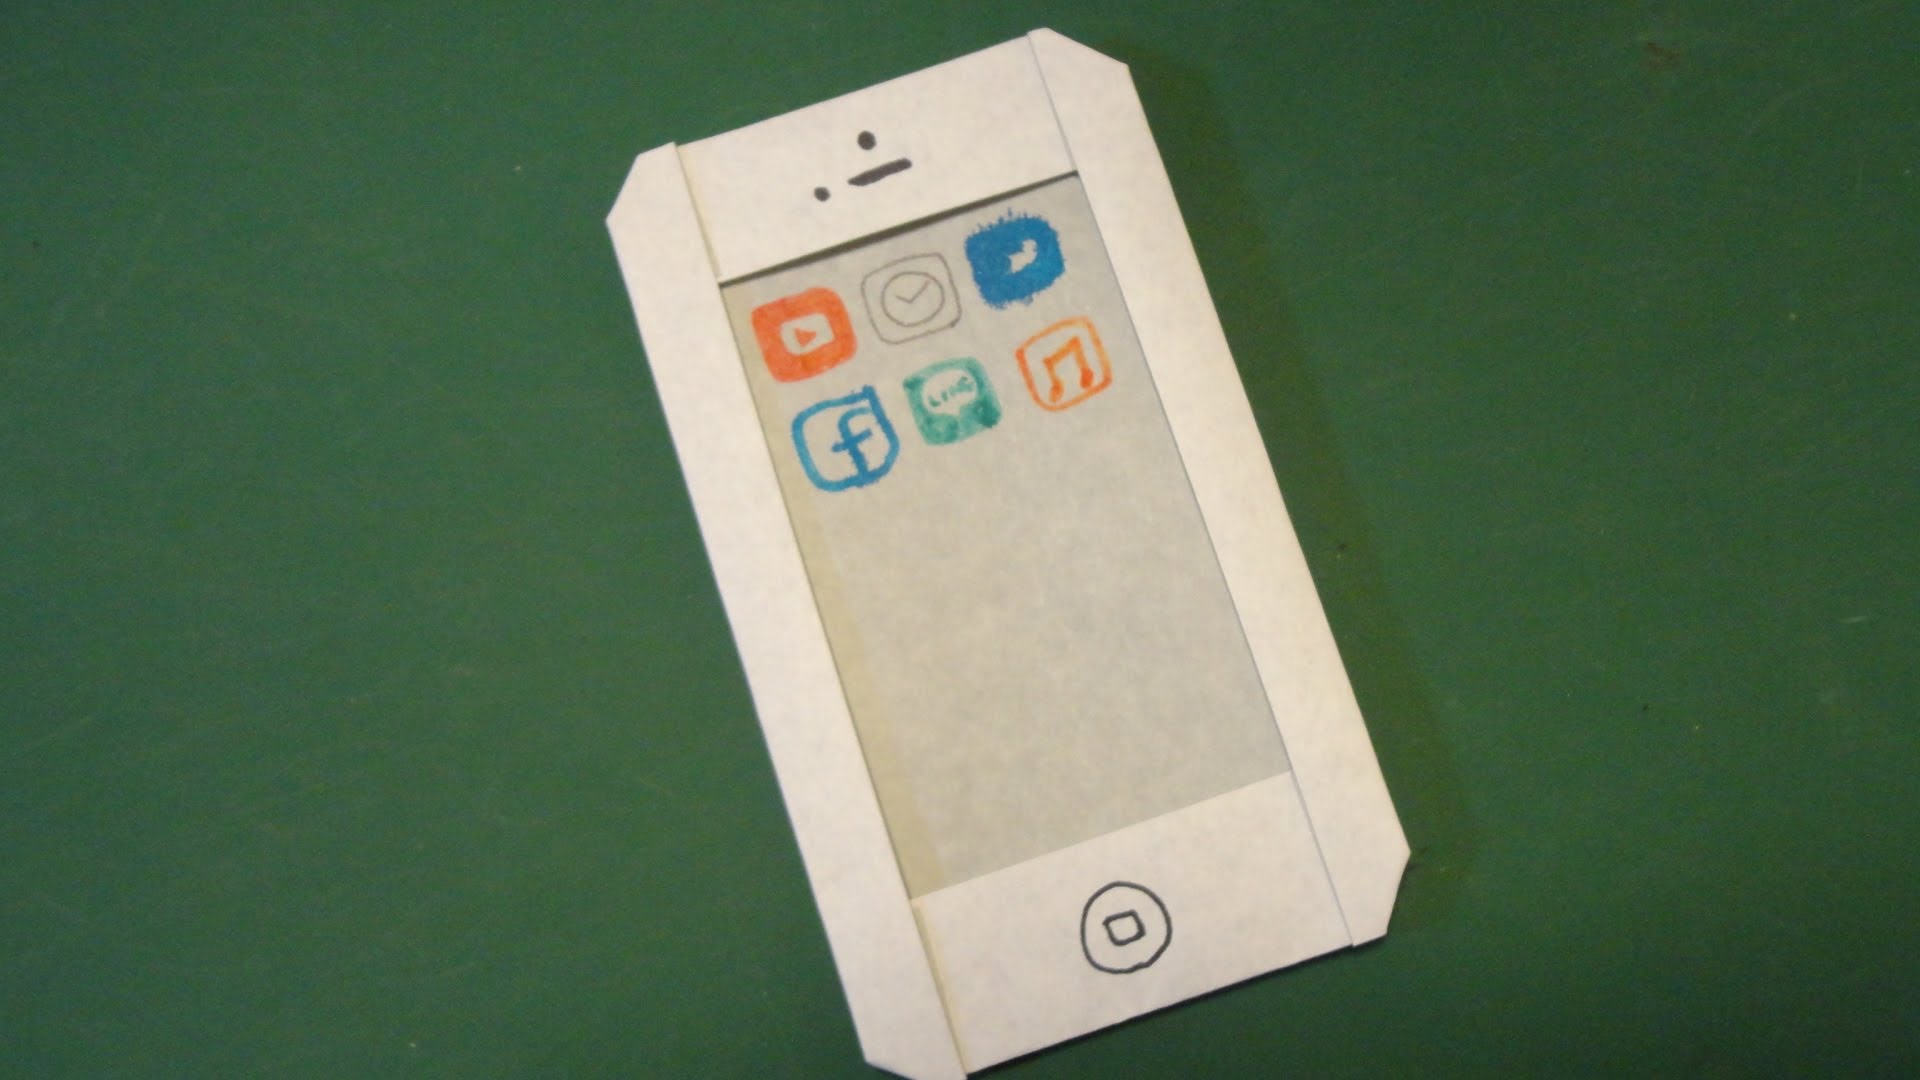 cách làm điện thoại bằng giấy